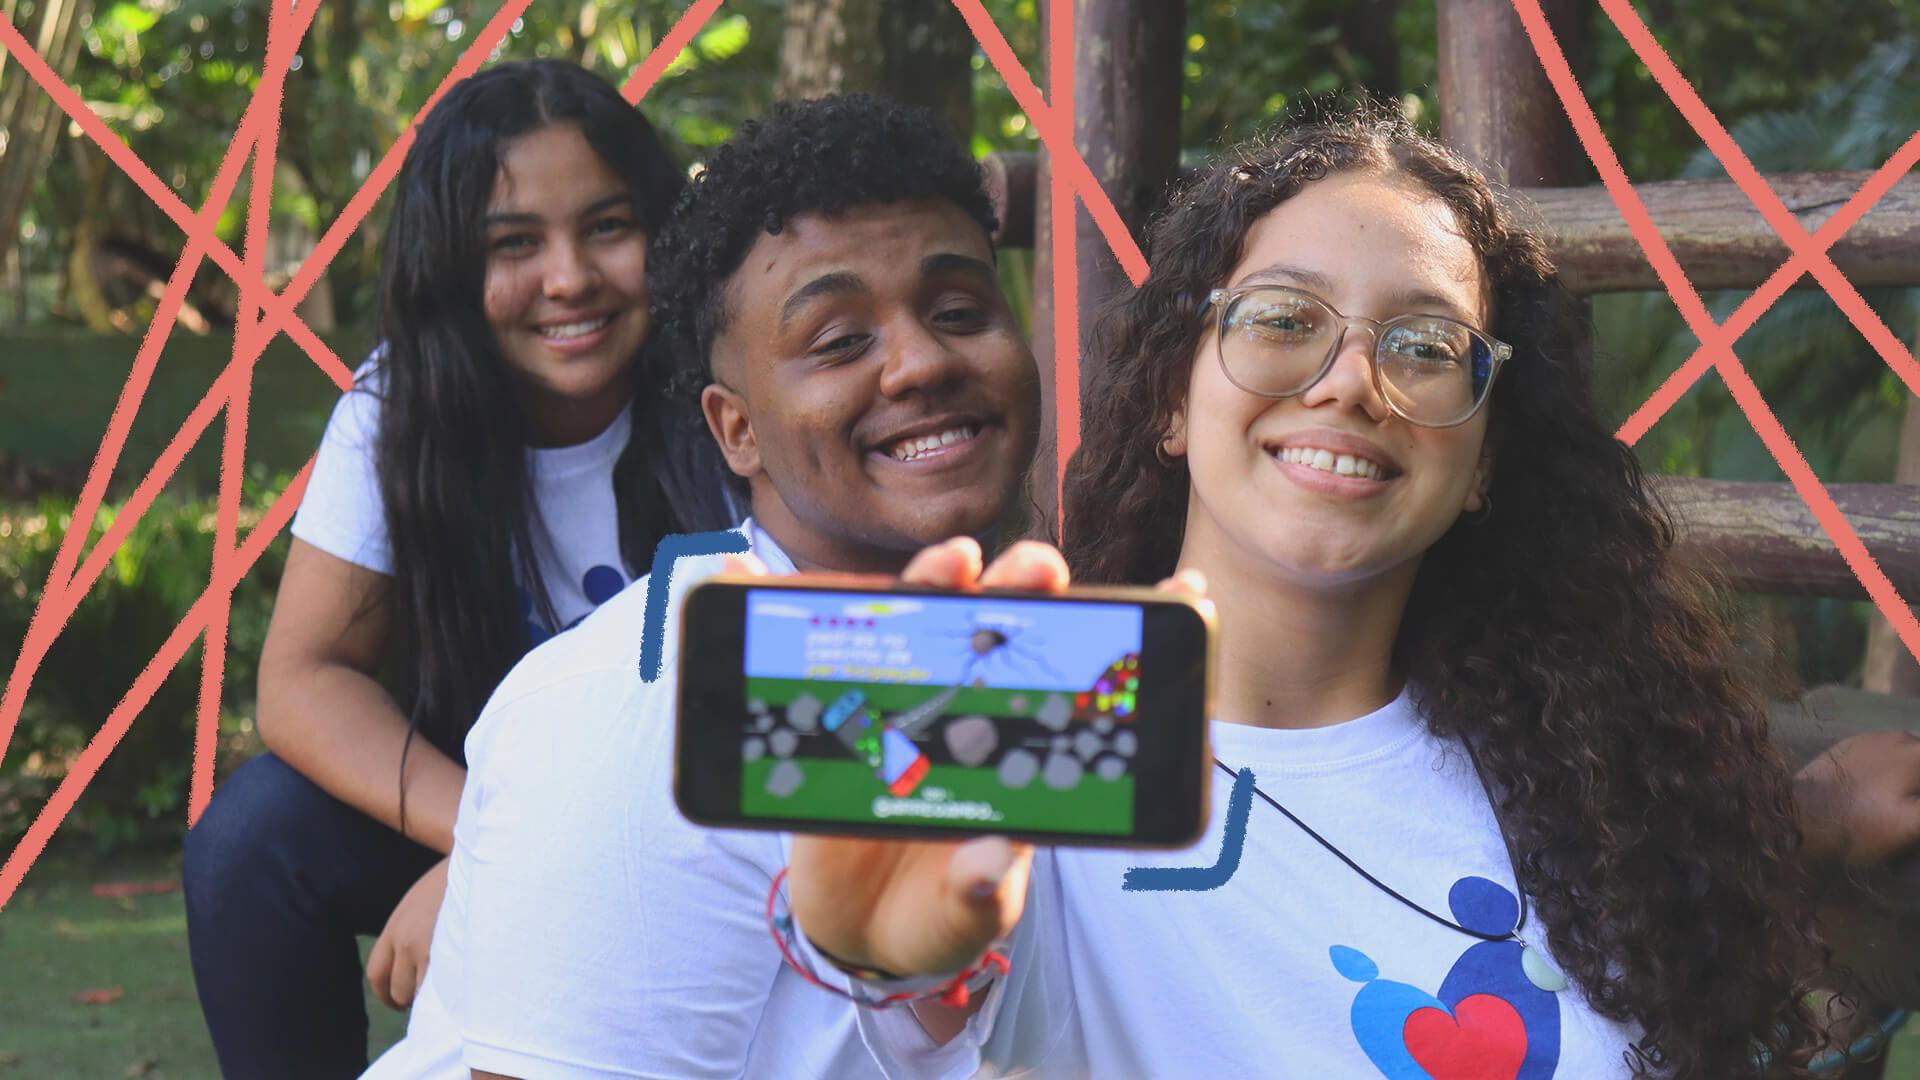 Na foto, três adolescentes sorriem enquanto mostram a tela de um celular, que mostra um jogo.